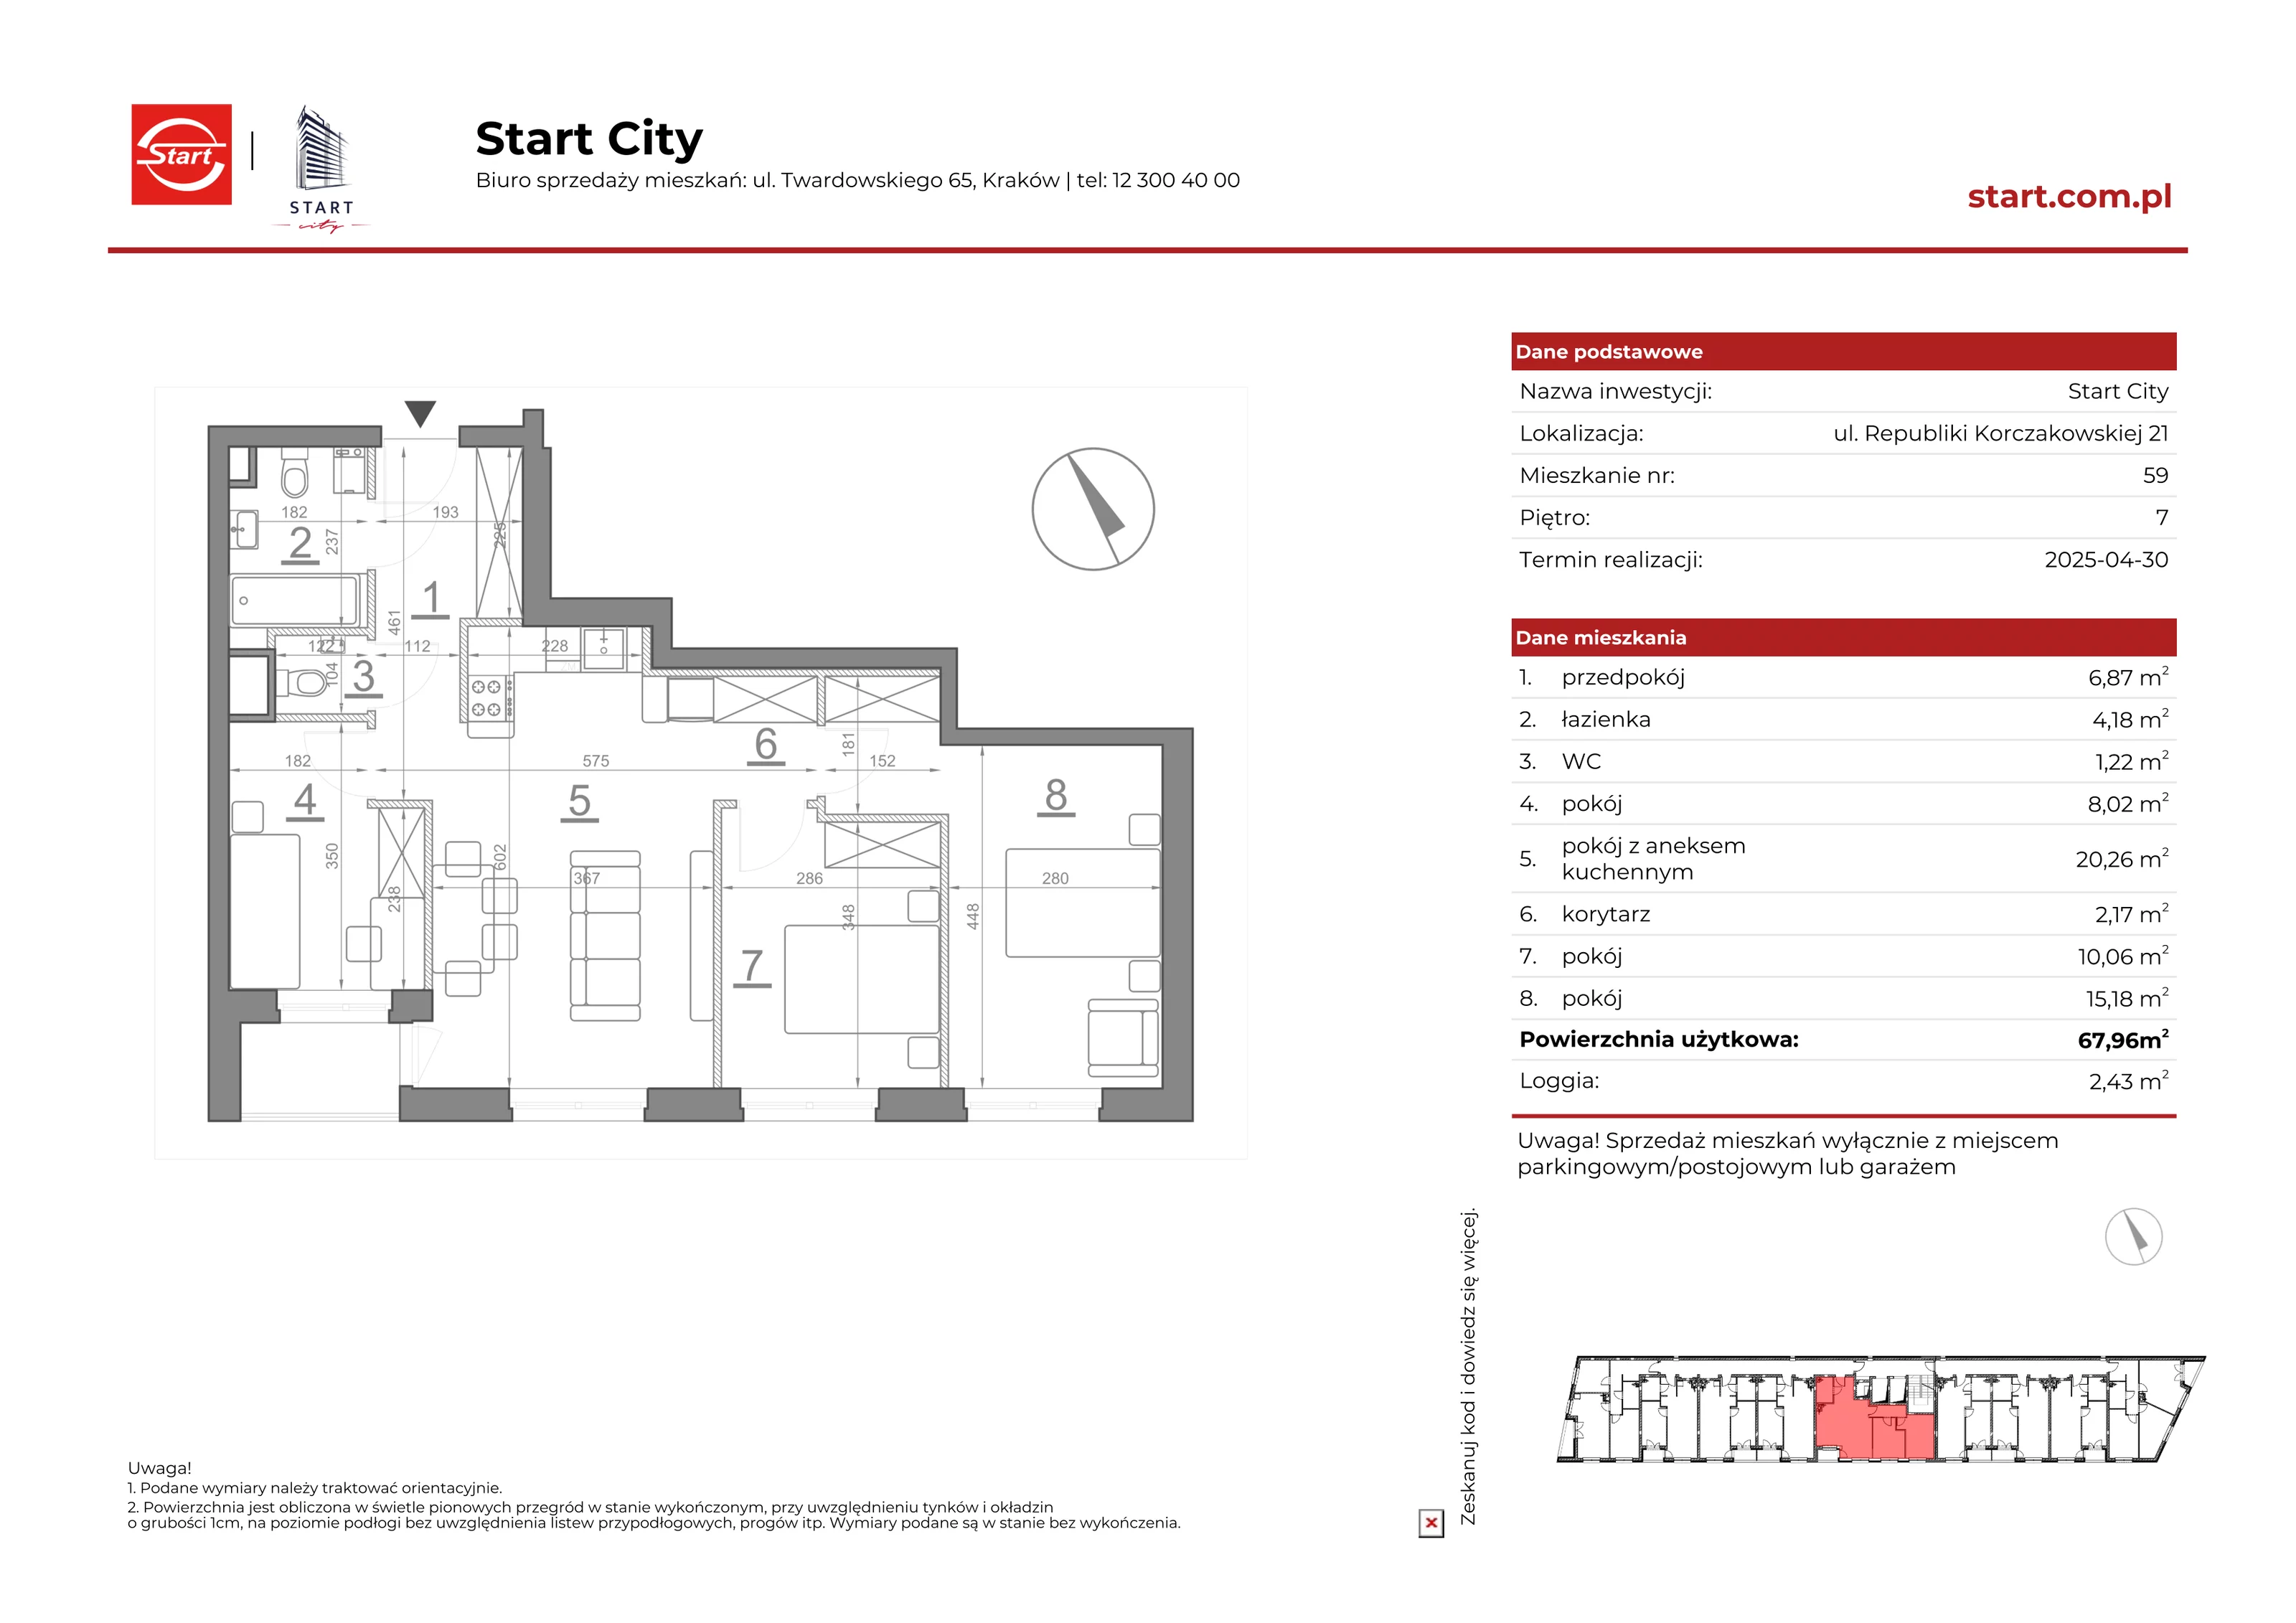 Mieszkanie 67,96 m², piętro 7, oferta nr 21/59, Start City, Kraków, Bieżanów-Prokocim, ul. Republiki Korczakowskiej 21